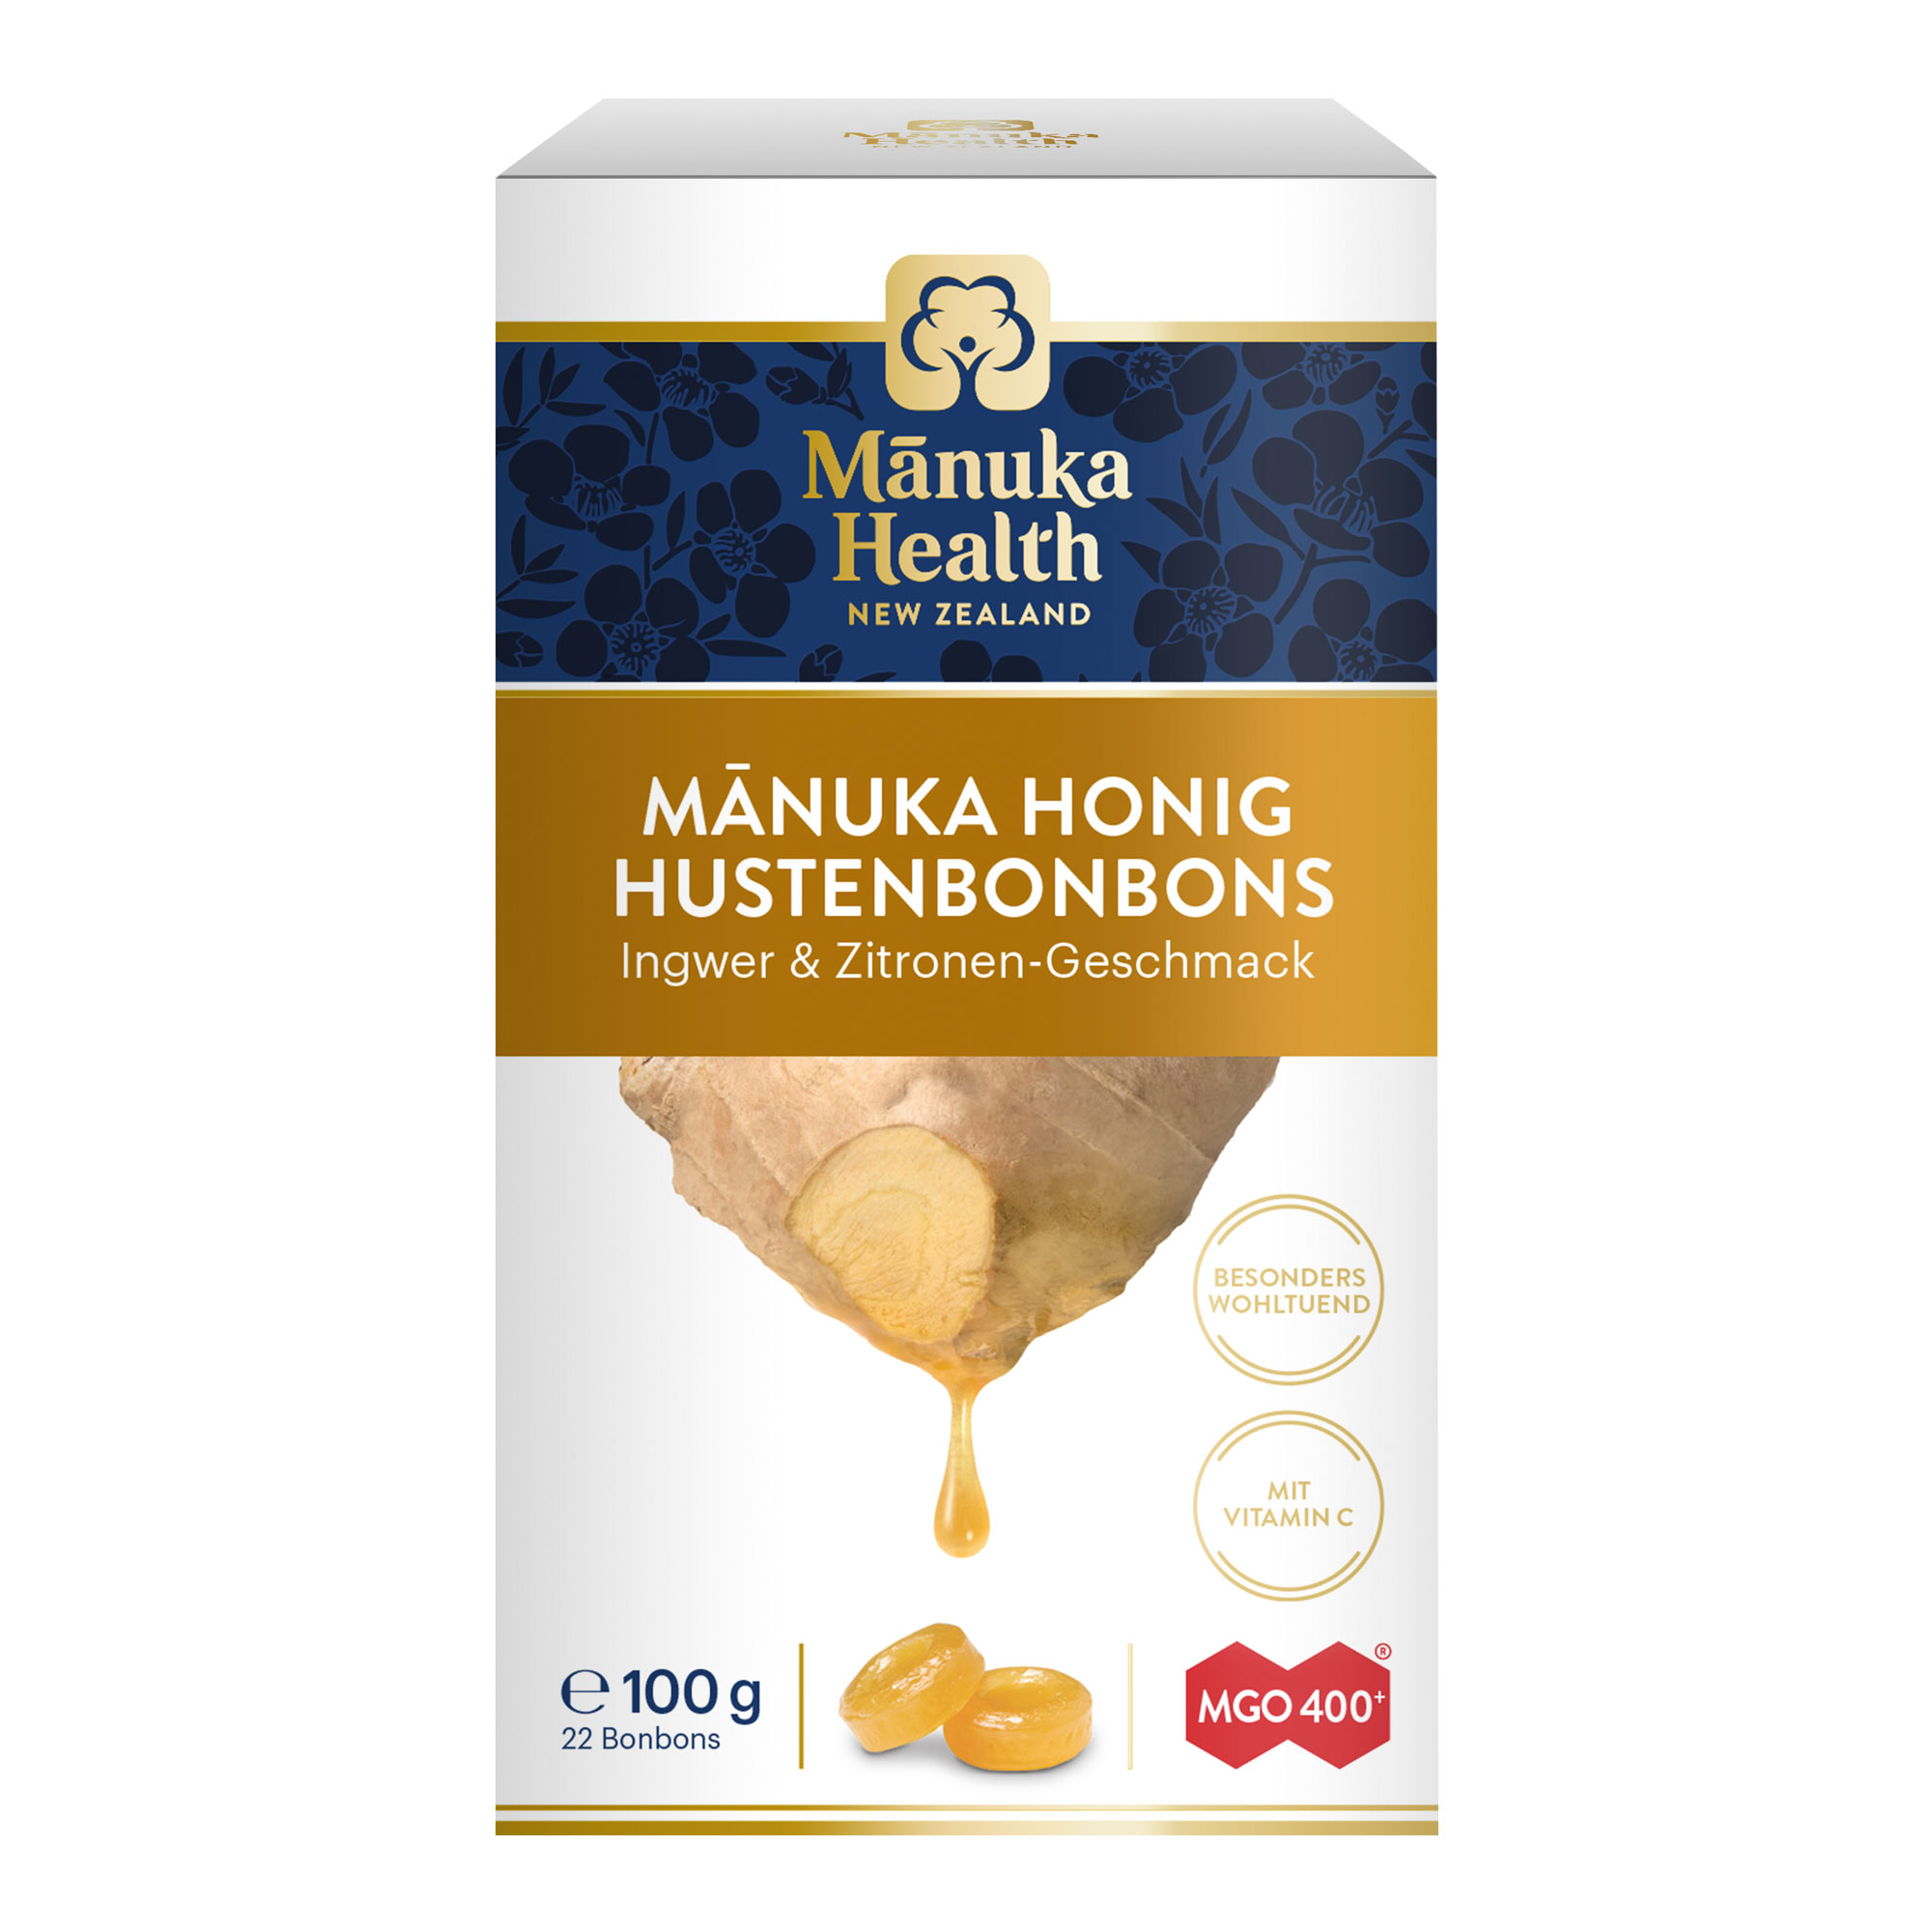 Hustenbonbons mit Vitamin C, Manuka Honig und fruchtigem Zitronen- und Ingwergeschmack.